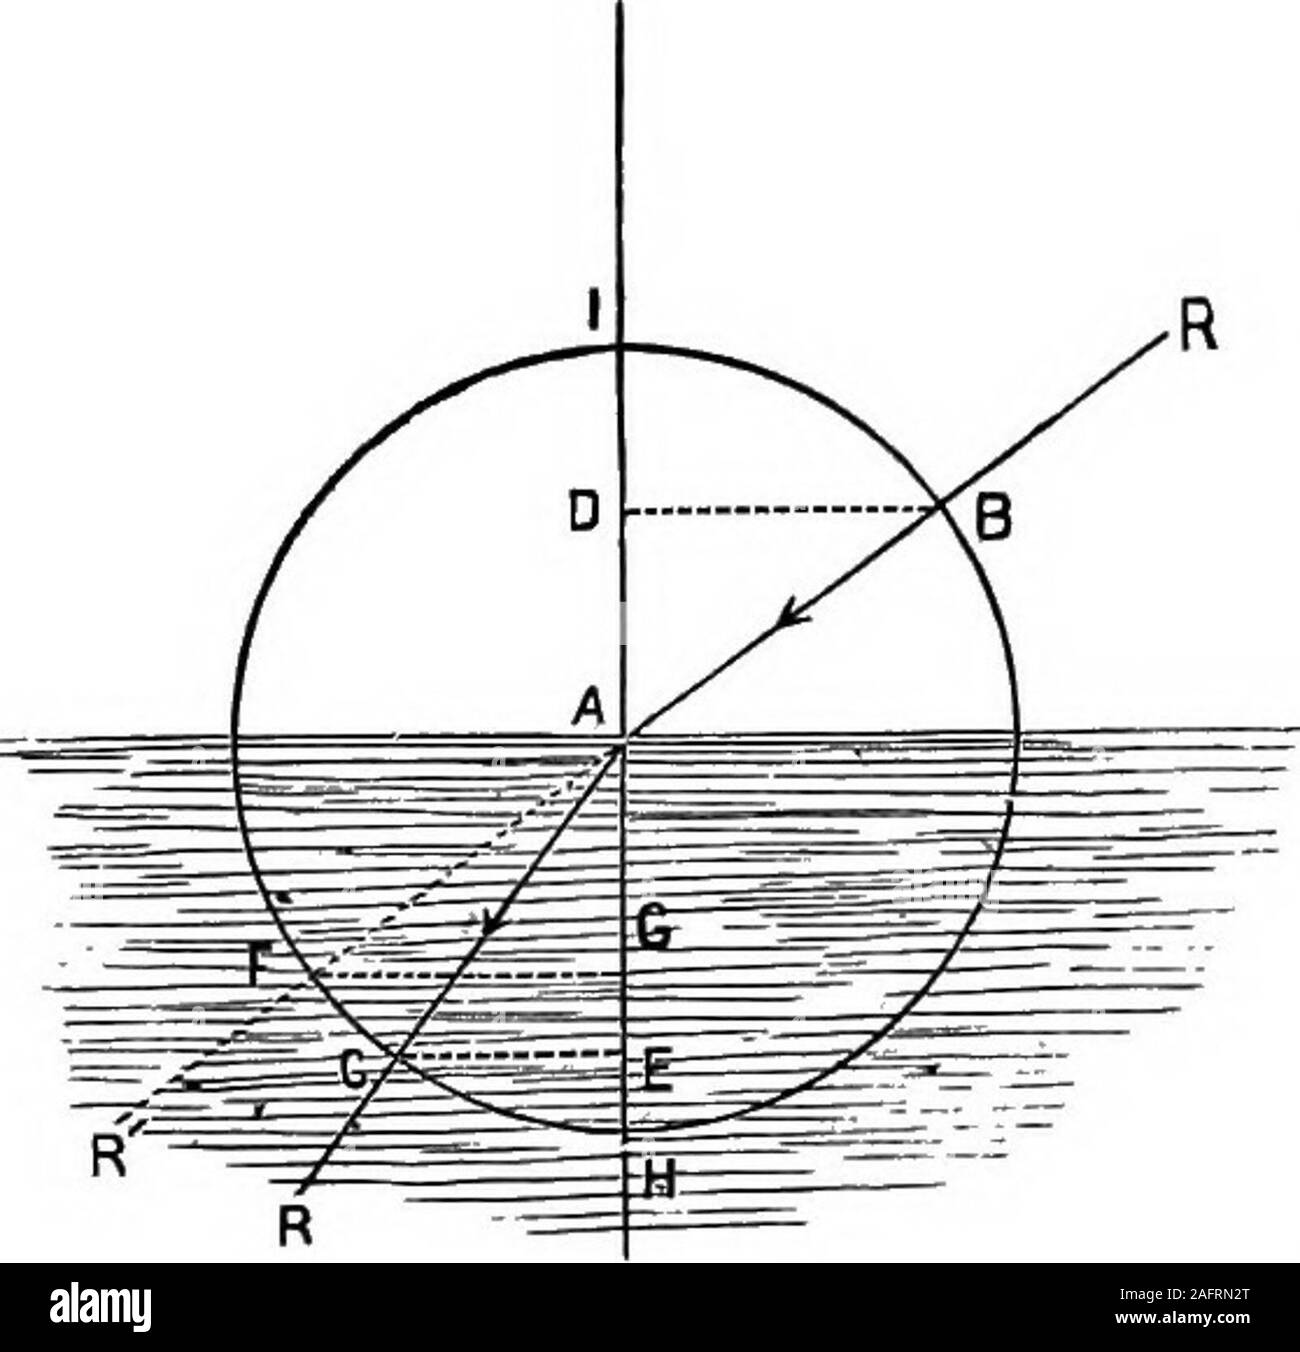 . I principi della fisica. s zero quando il incidentray è normale. È estremamente importante conoscere l'angolo ofincidence, per essere in grado di determinare la direzione in cui un raggio avrà entrando in un newmedium. Descrivere un circlearound il punto di inci-dence A (Fig. 255) come acenter; attraverso la samepoint disegnare IH perpendicu-lar alle superfici di idue medium, ed alla caduta di ttiisline perpendicularsB D e C e dal pointswhere il cerchio theray tagli in due terreni.quindi supporre che la per-pendicular B D è y% del raggio AB ; ora questa frazione?^f^ è chiamato (in trigonometria) il seno di Foto Stock